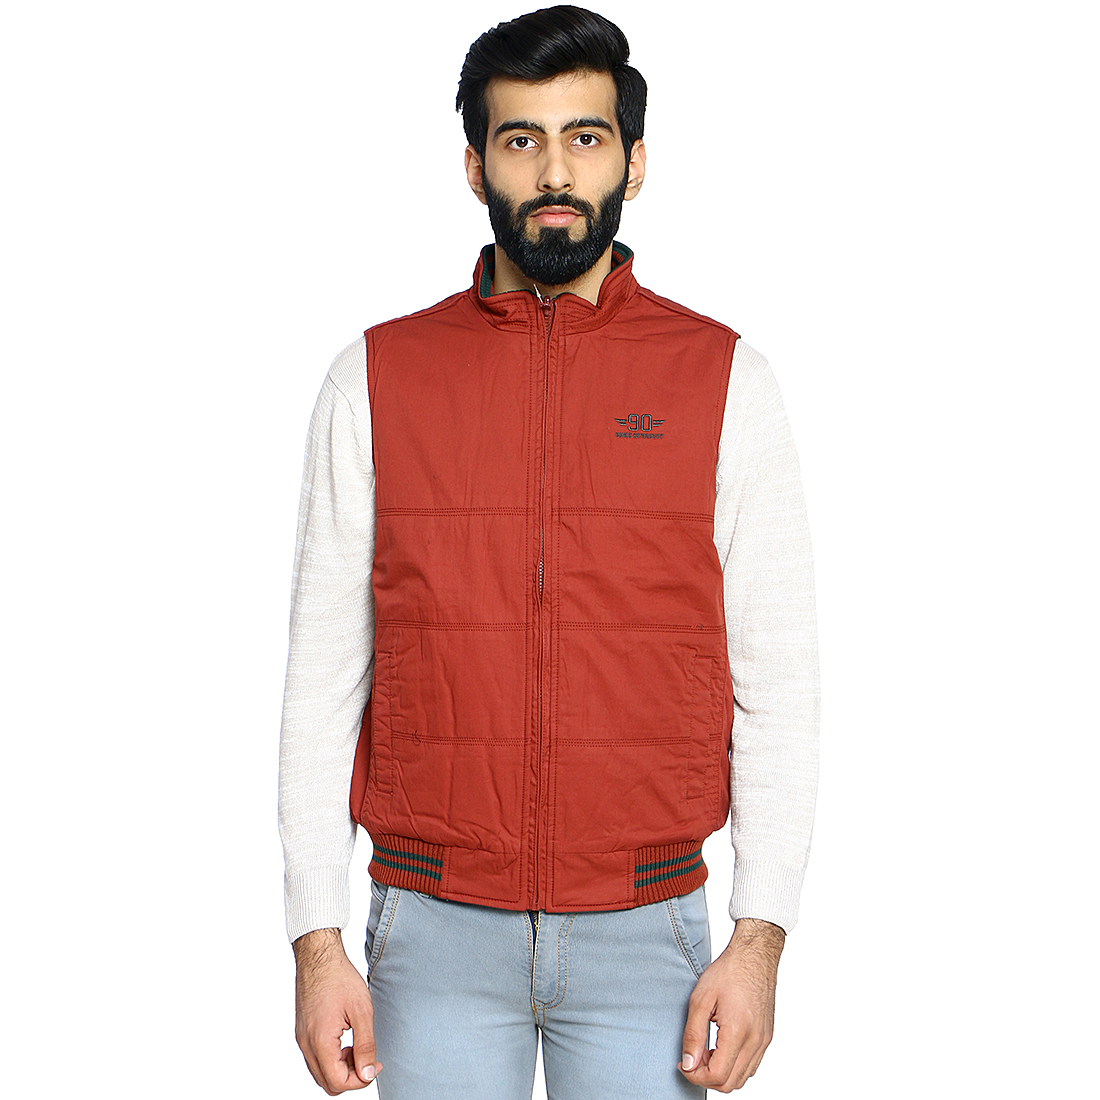 Men's Wear Jackets Brand in India | Duke